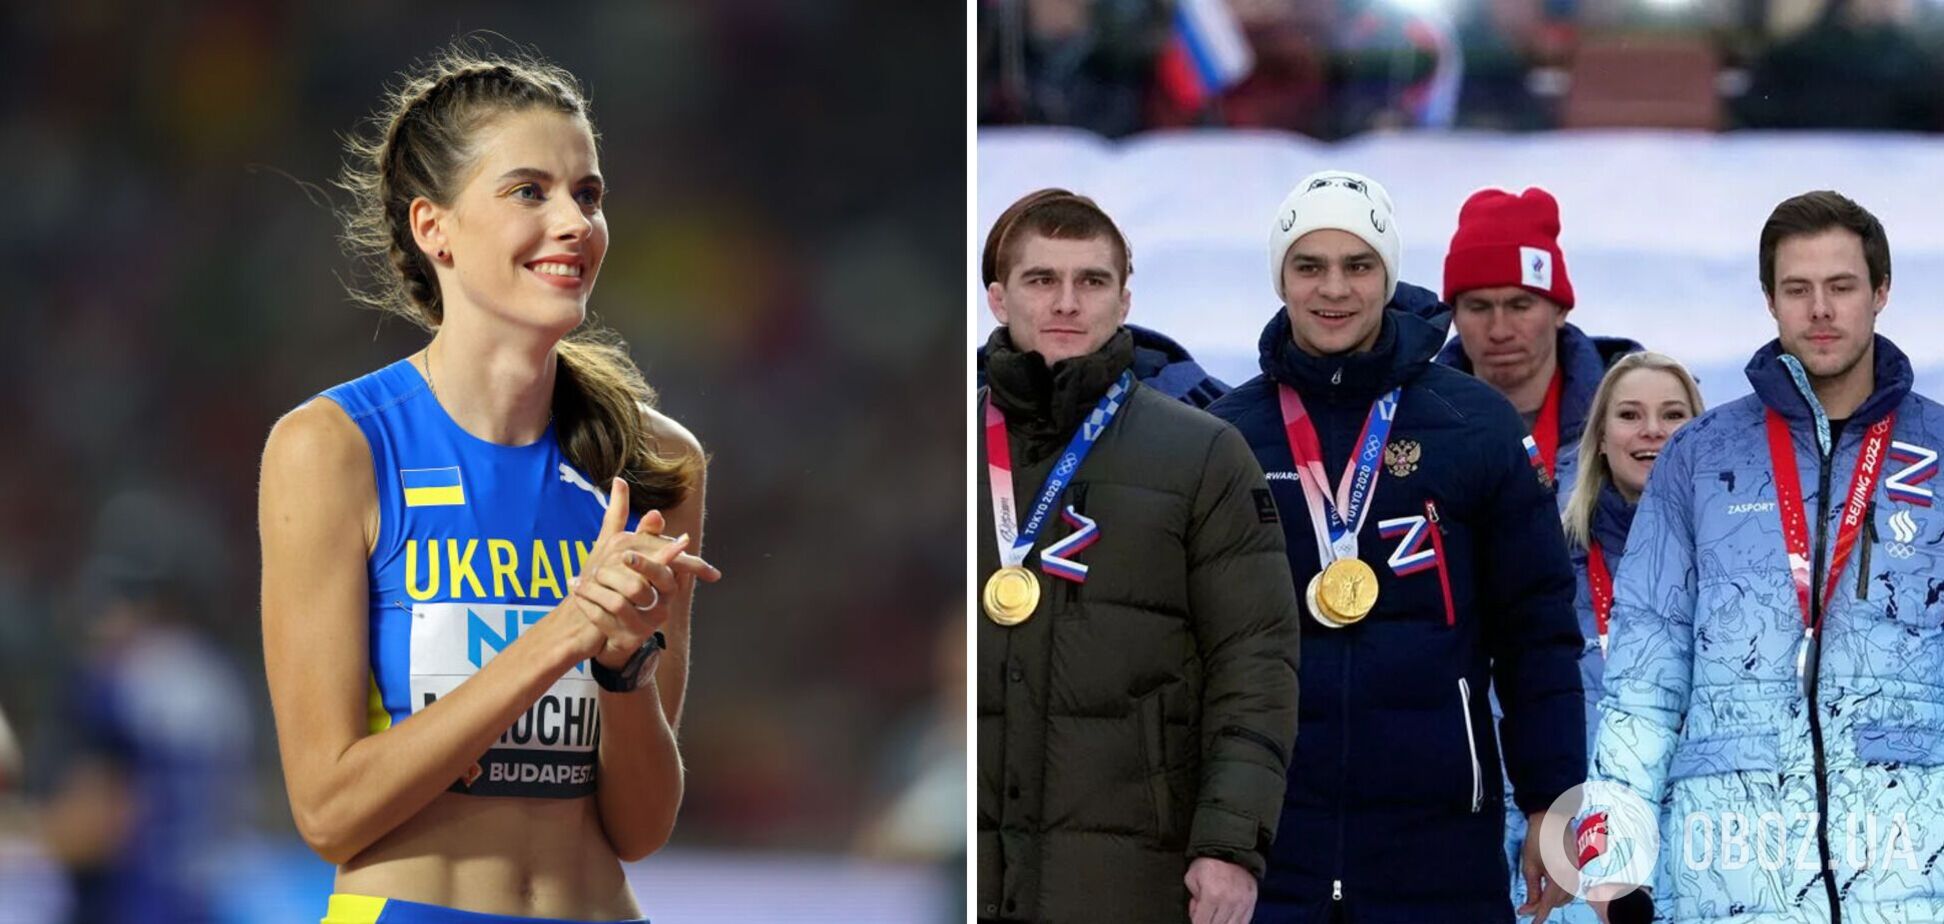 'Хизуючись болем за свій народ': росЗМІ 'викрили' українську чемпіонку світу, яка закликала до повного відсторонення росіян